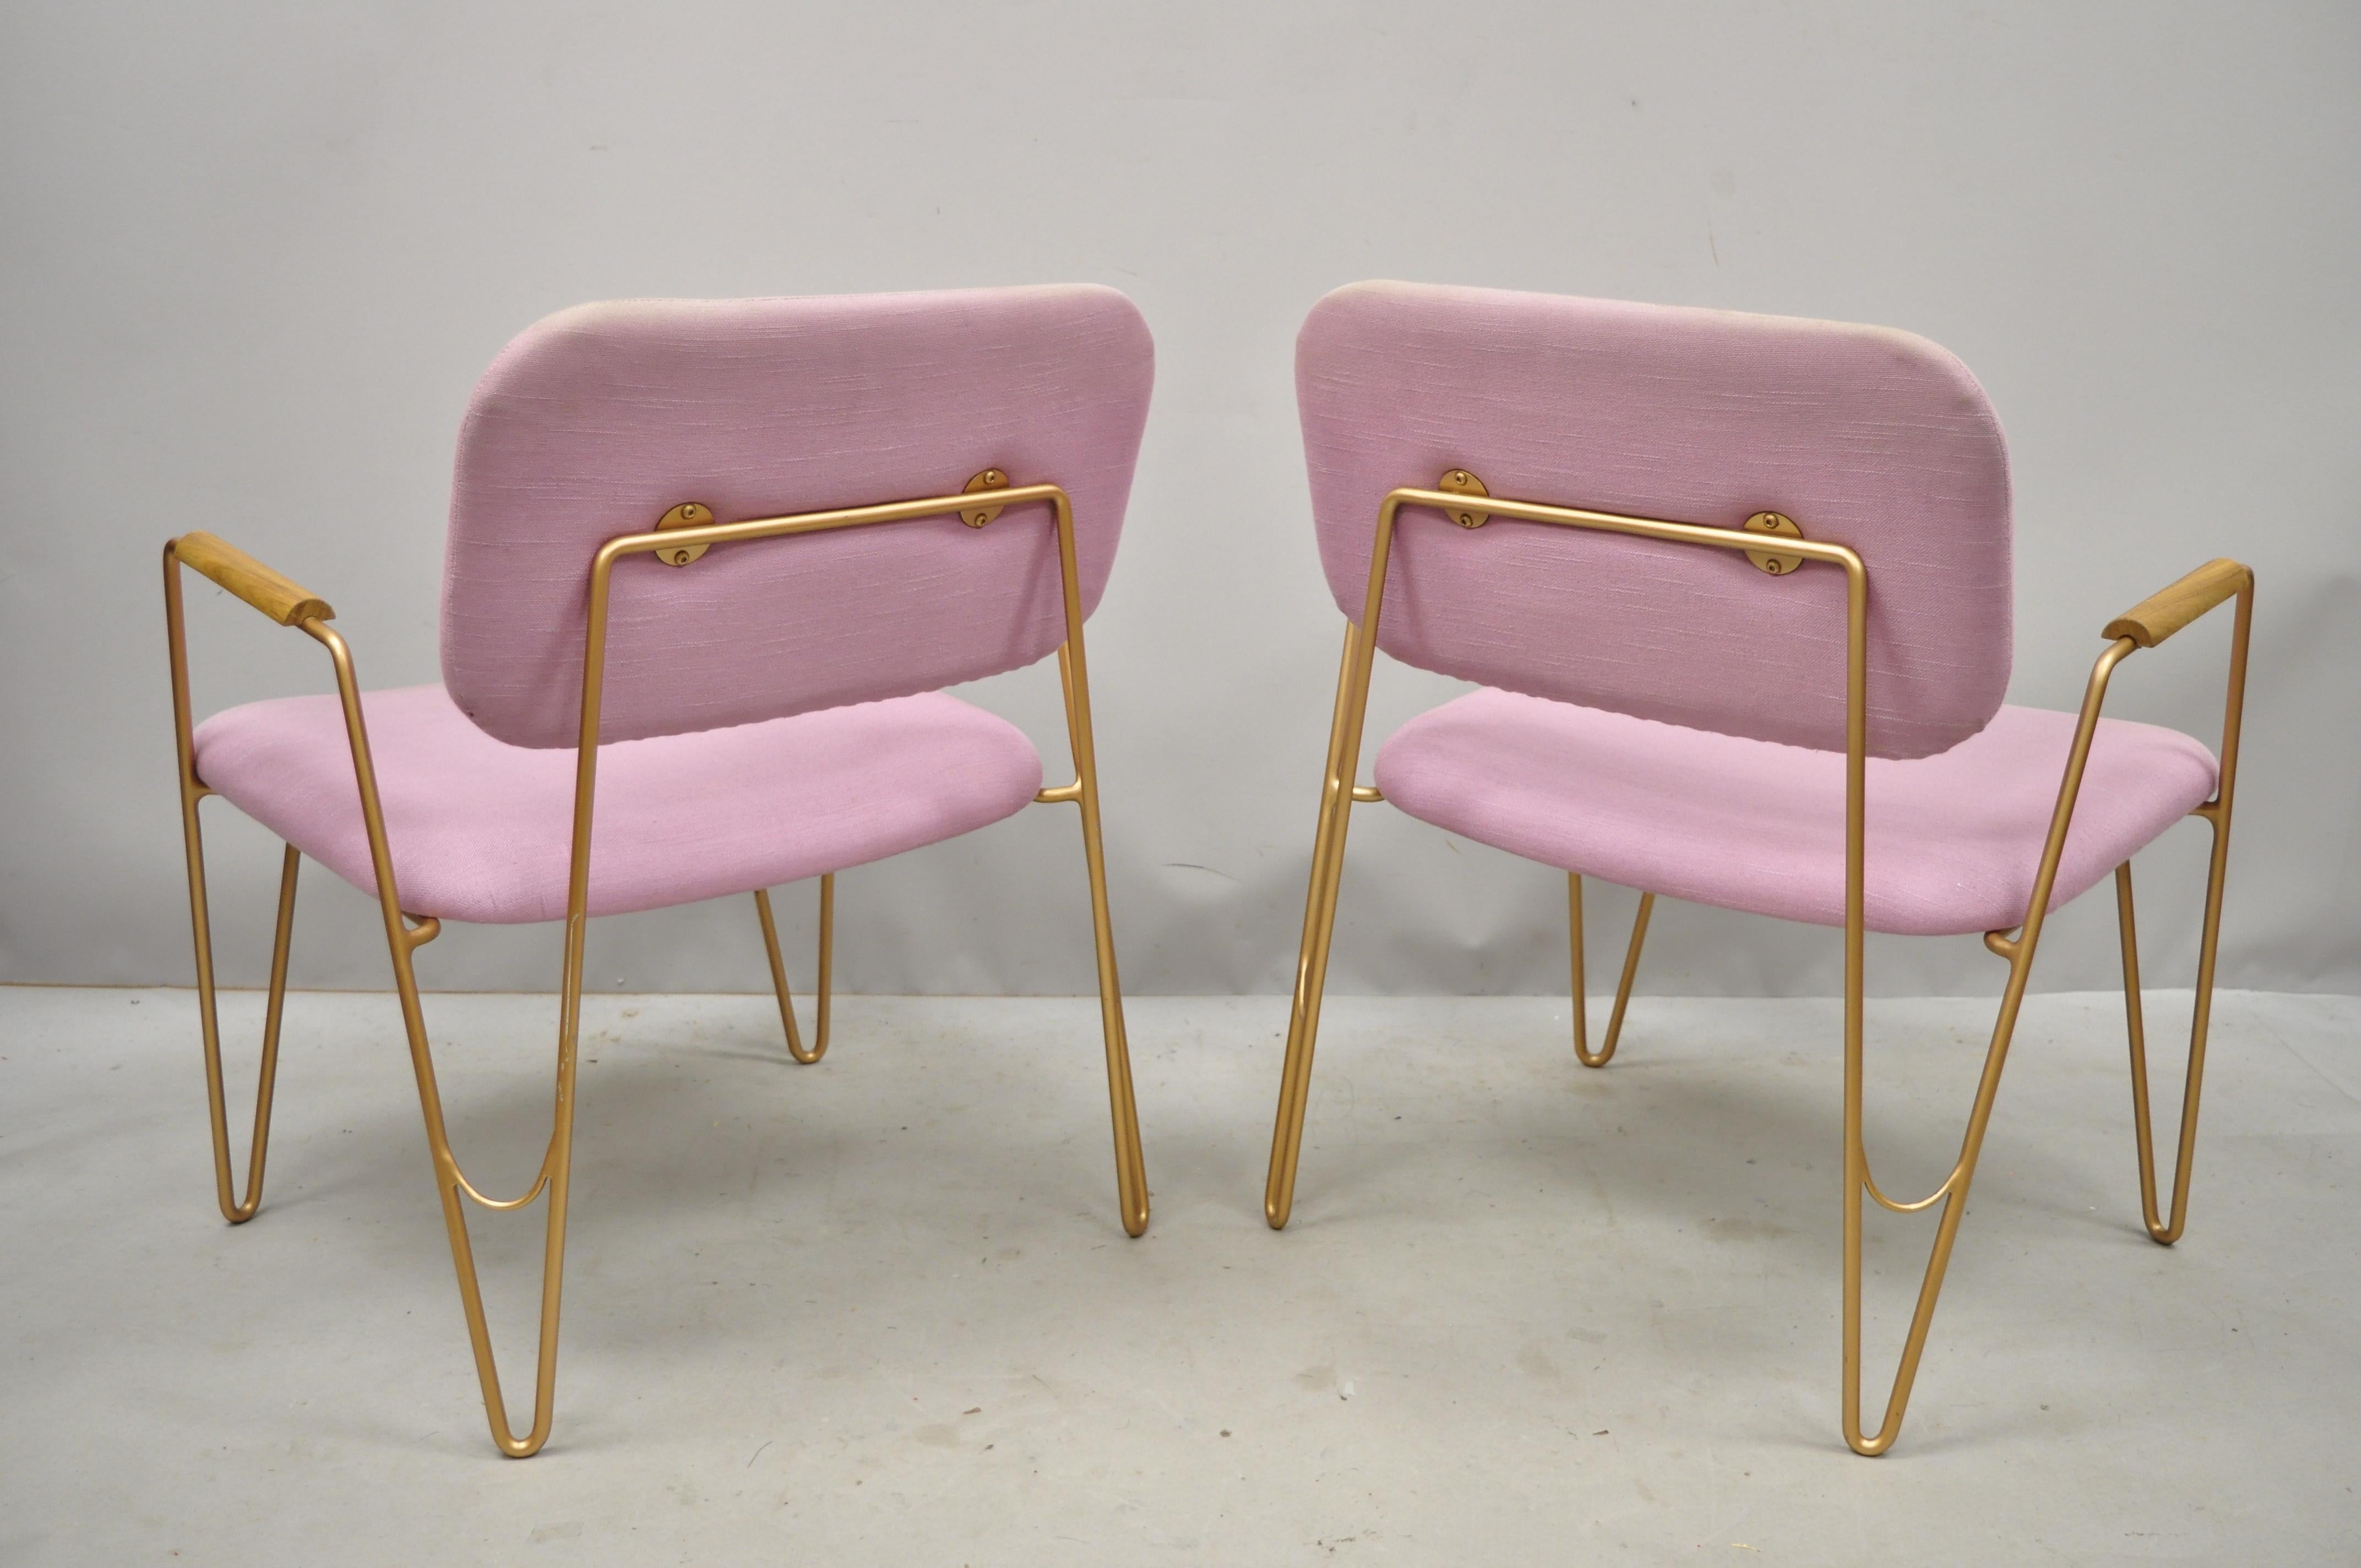 Paire de fauteuils de salon modernes contemporains en métal violet et doré avec pieds en épingle à cheveux. La liste comprend un cadre en métal, des lignes modernistes épurées, une forme sculpturale élégante, circa 21st century, Pre-owned.